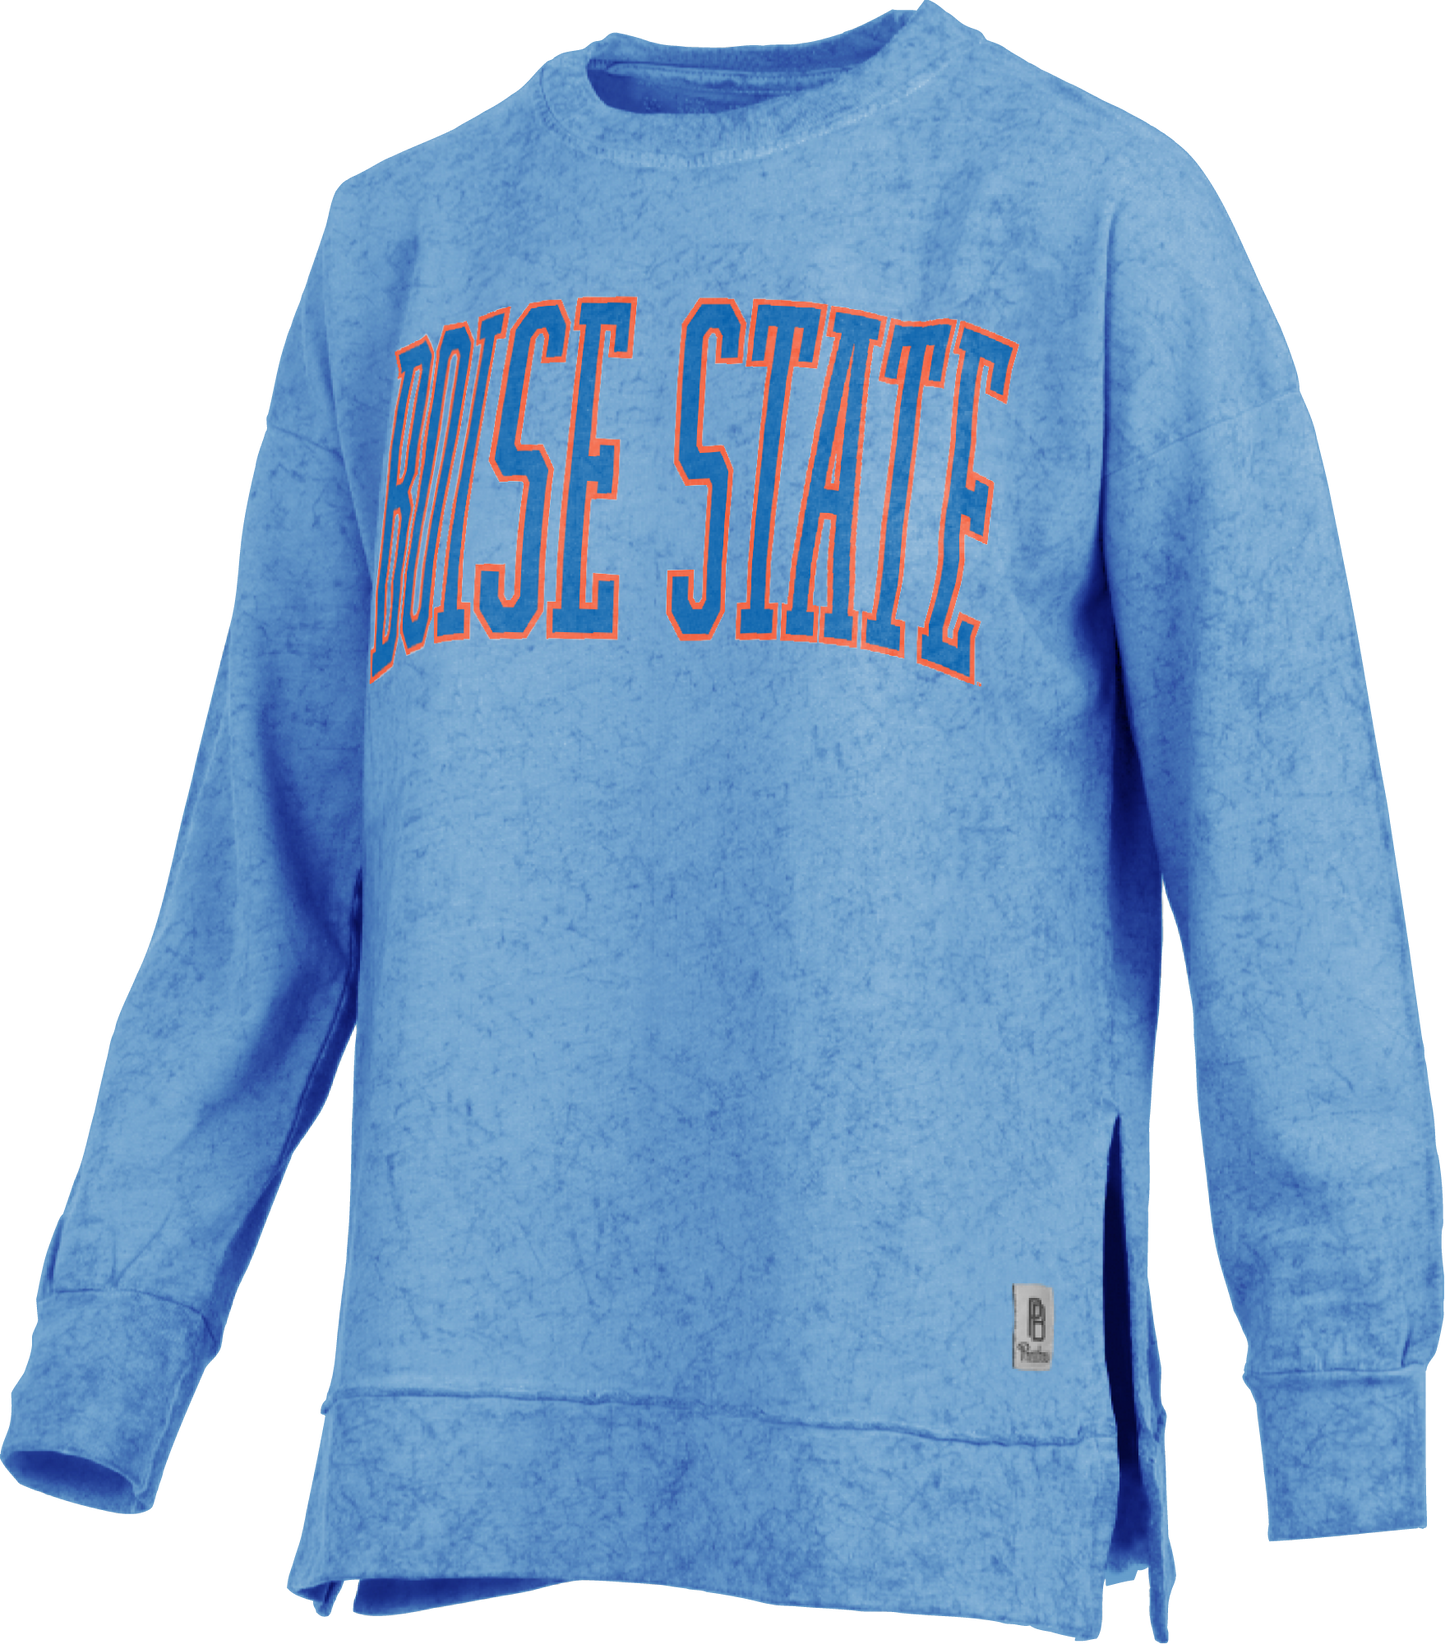 Boise State Broncos Pressbox Women's Long Sleeve T-Shirt (Light Blue)